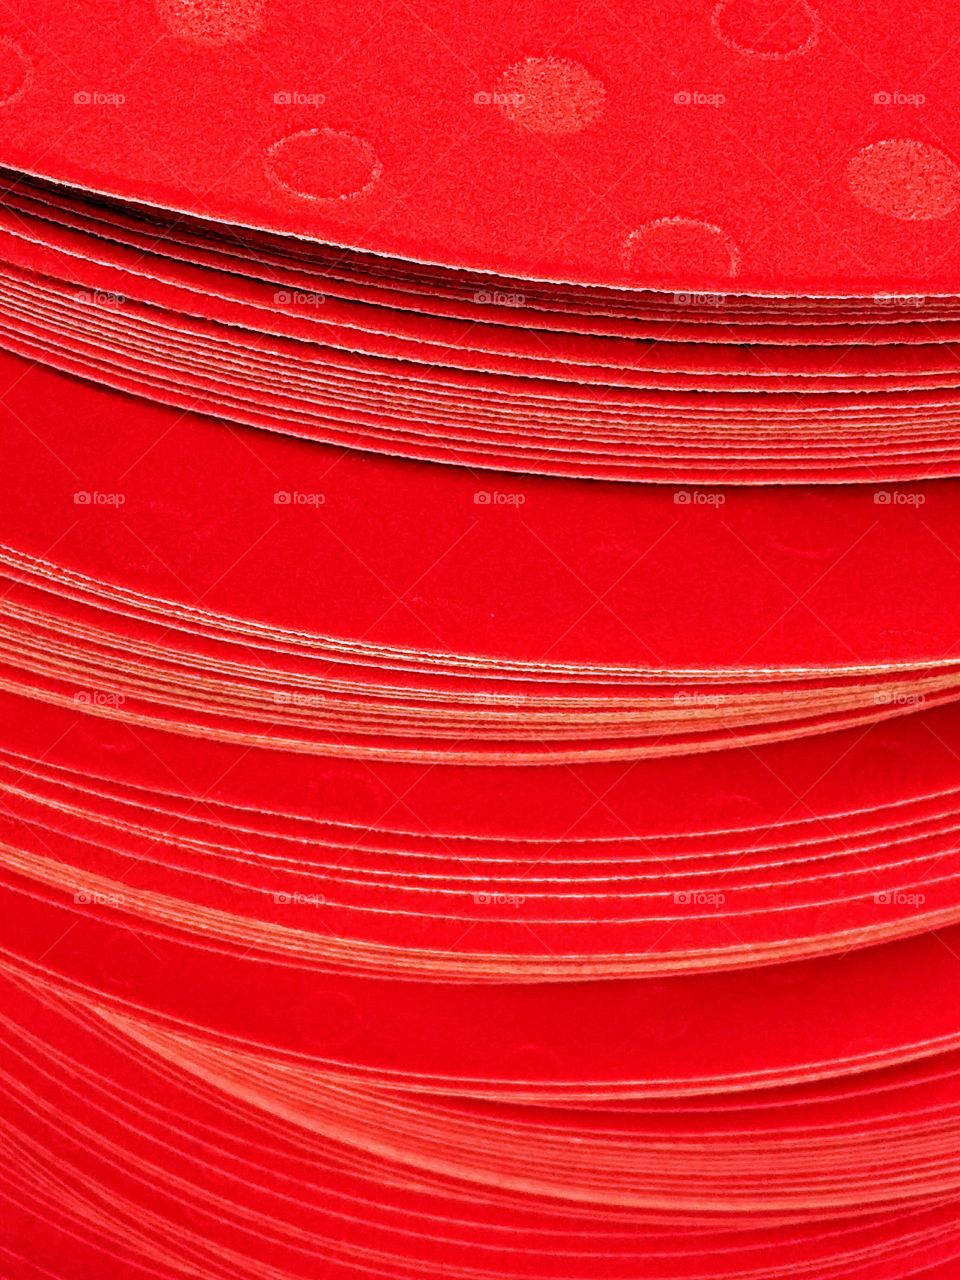 Full frame of red velvet paper